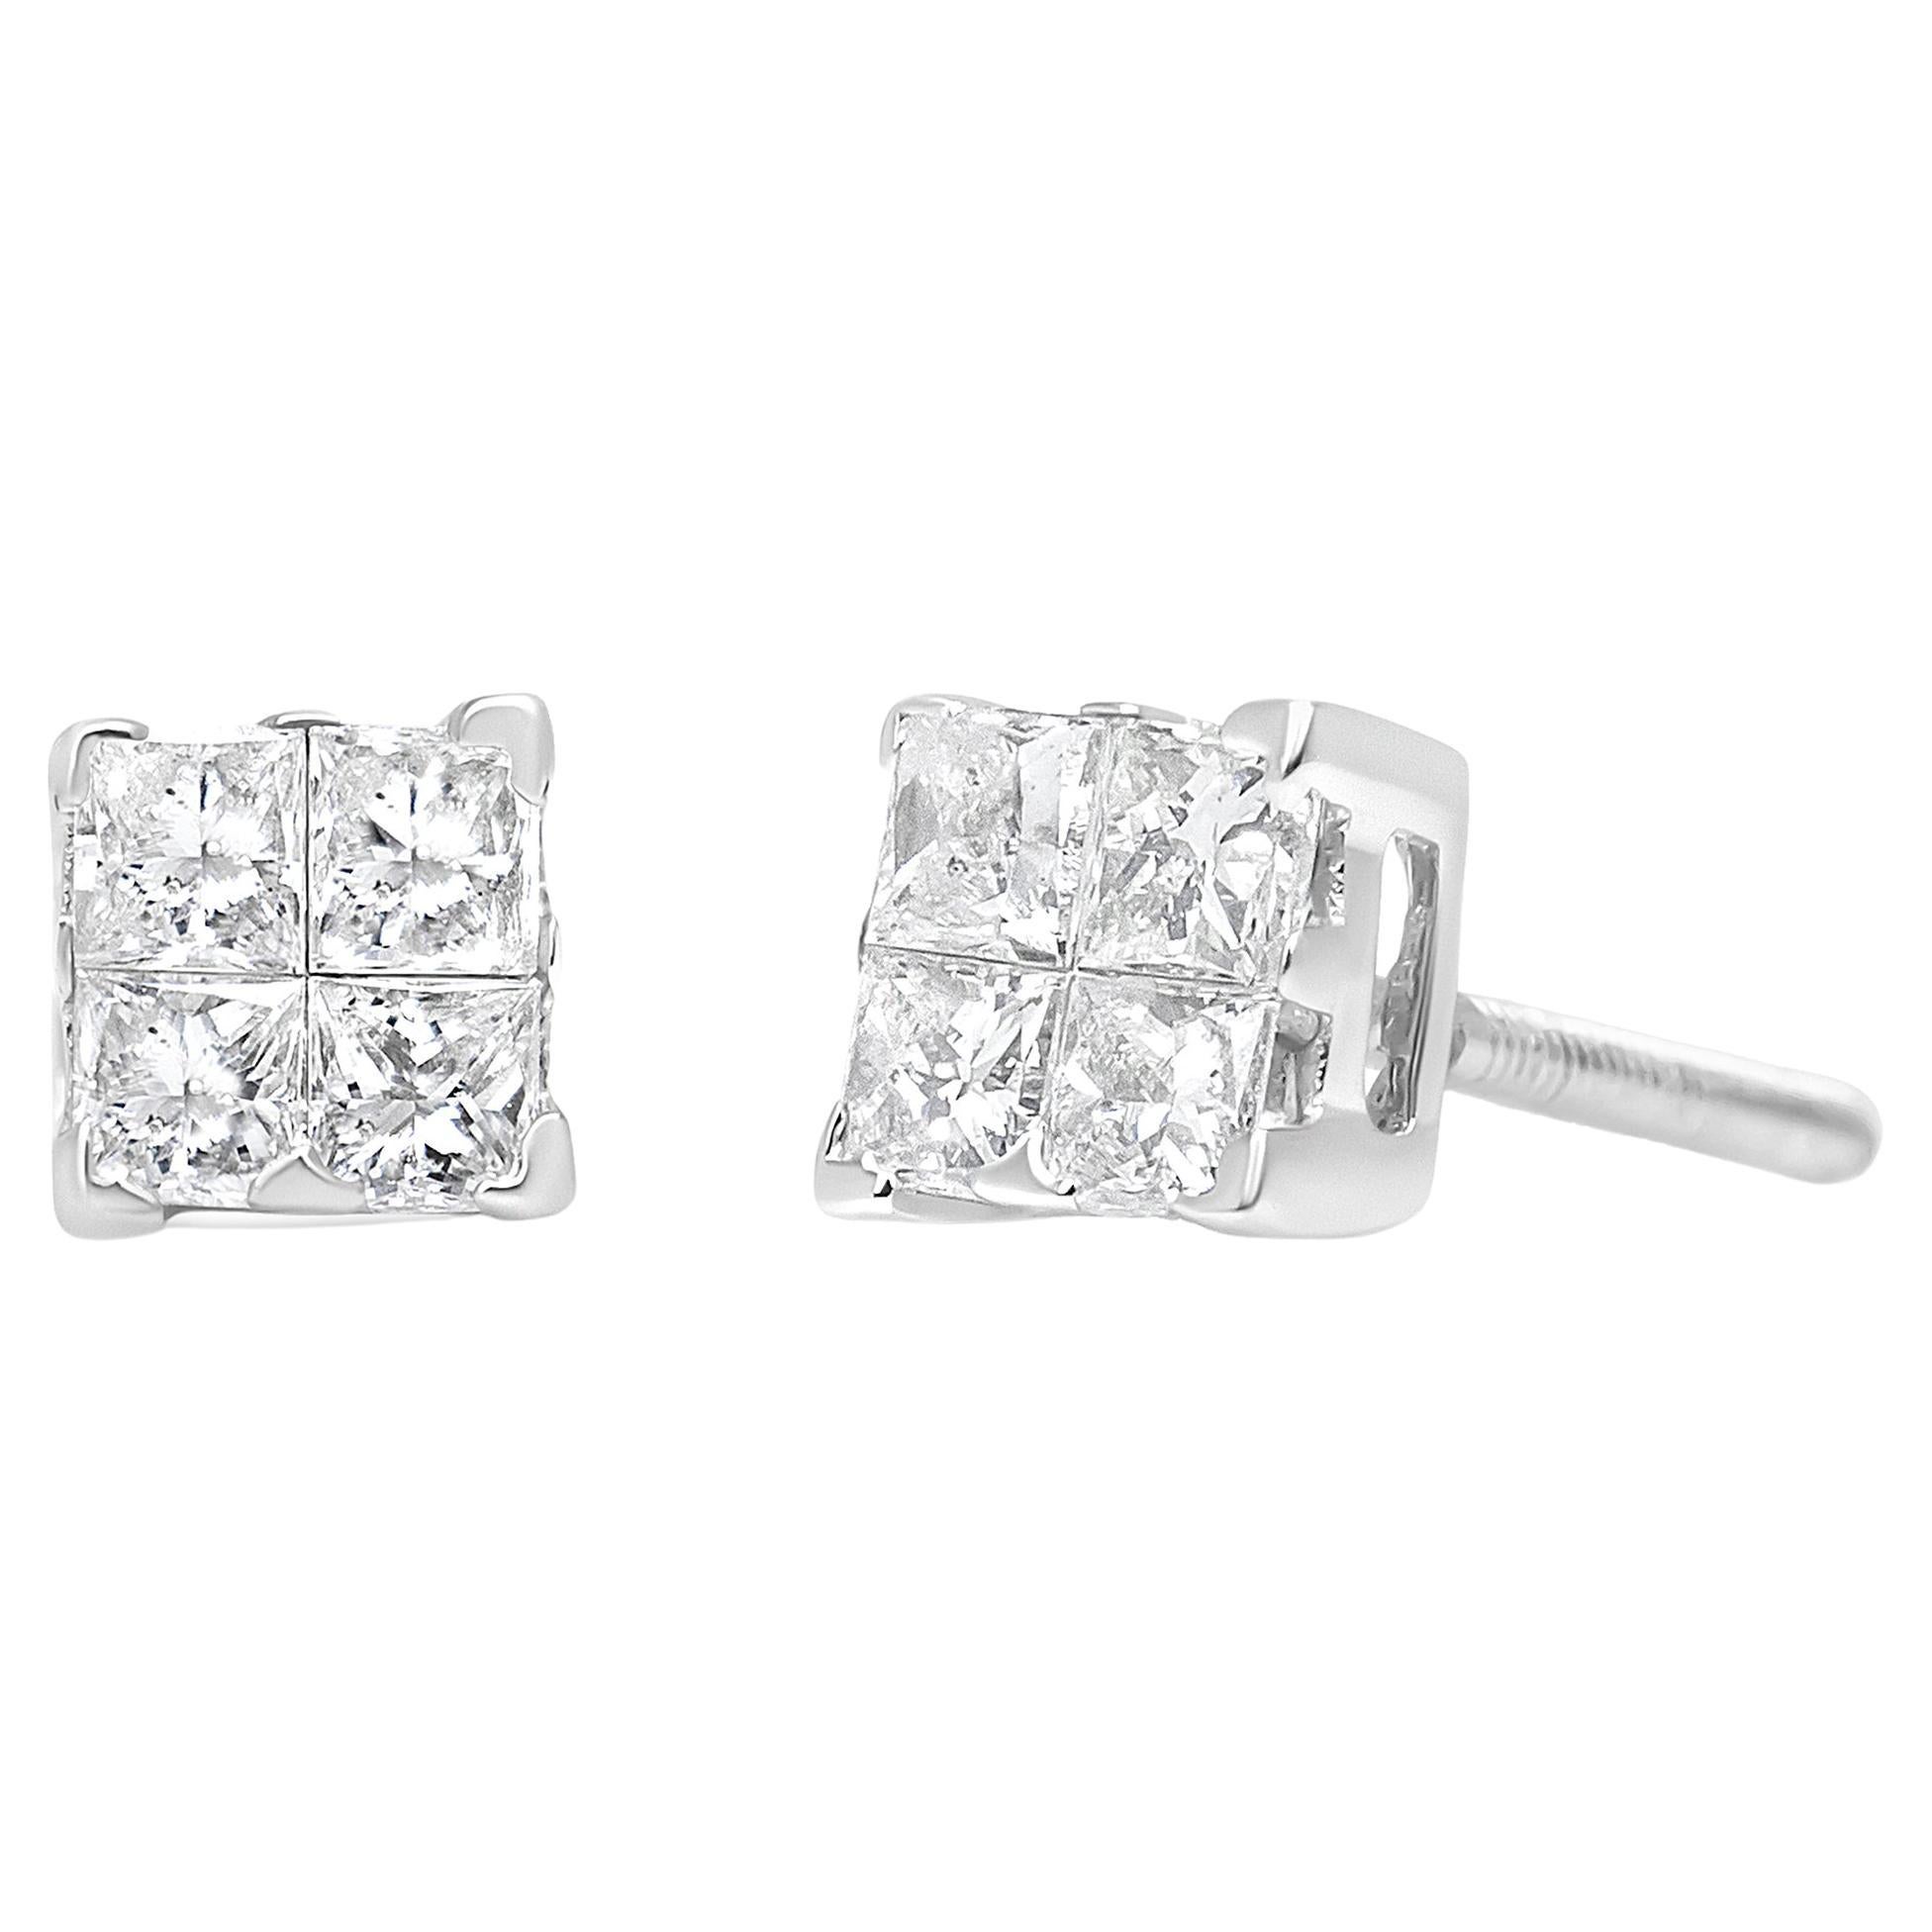 .925 Sterling Silver 6 MM Diamond Cut Post Stud Earrings MSRP $26 